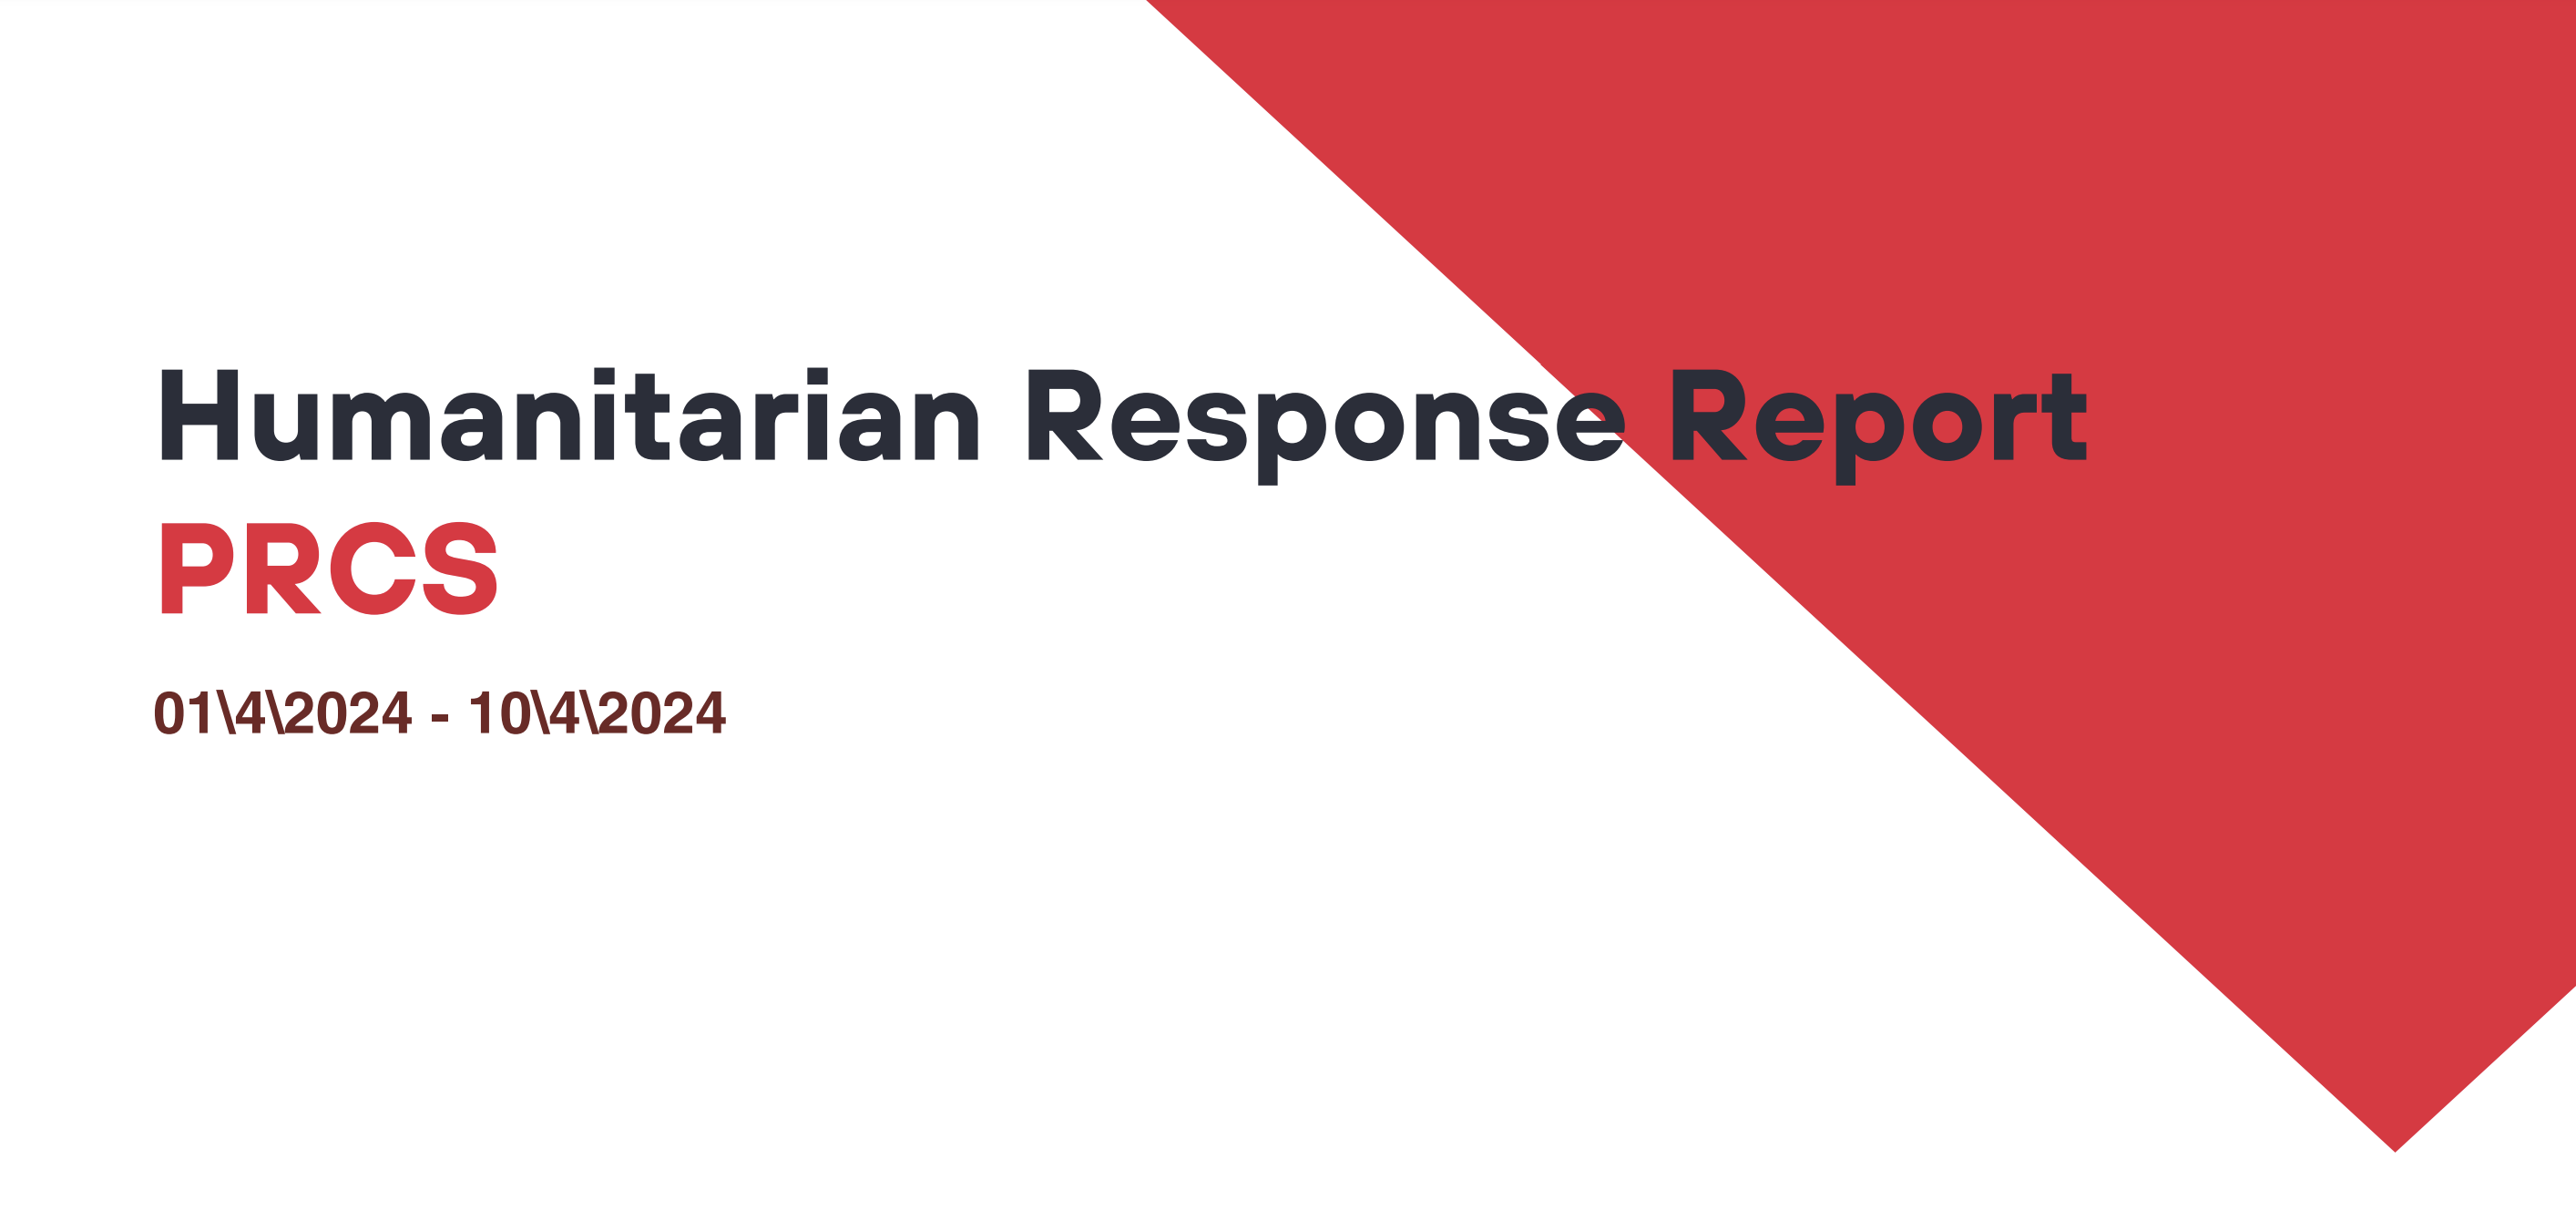 Humanitarian Response Report PRCS 1/4/2024 - 10/4/2024 